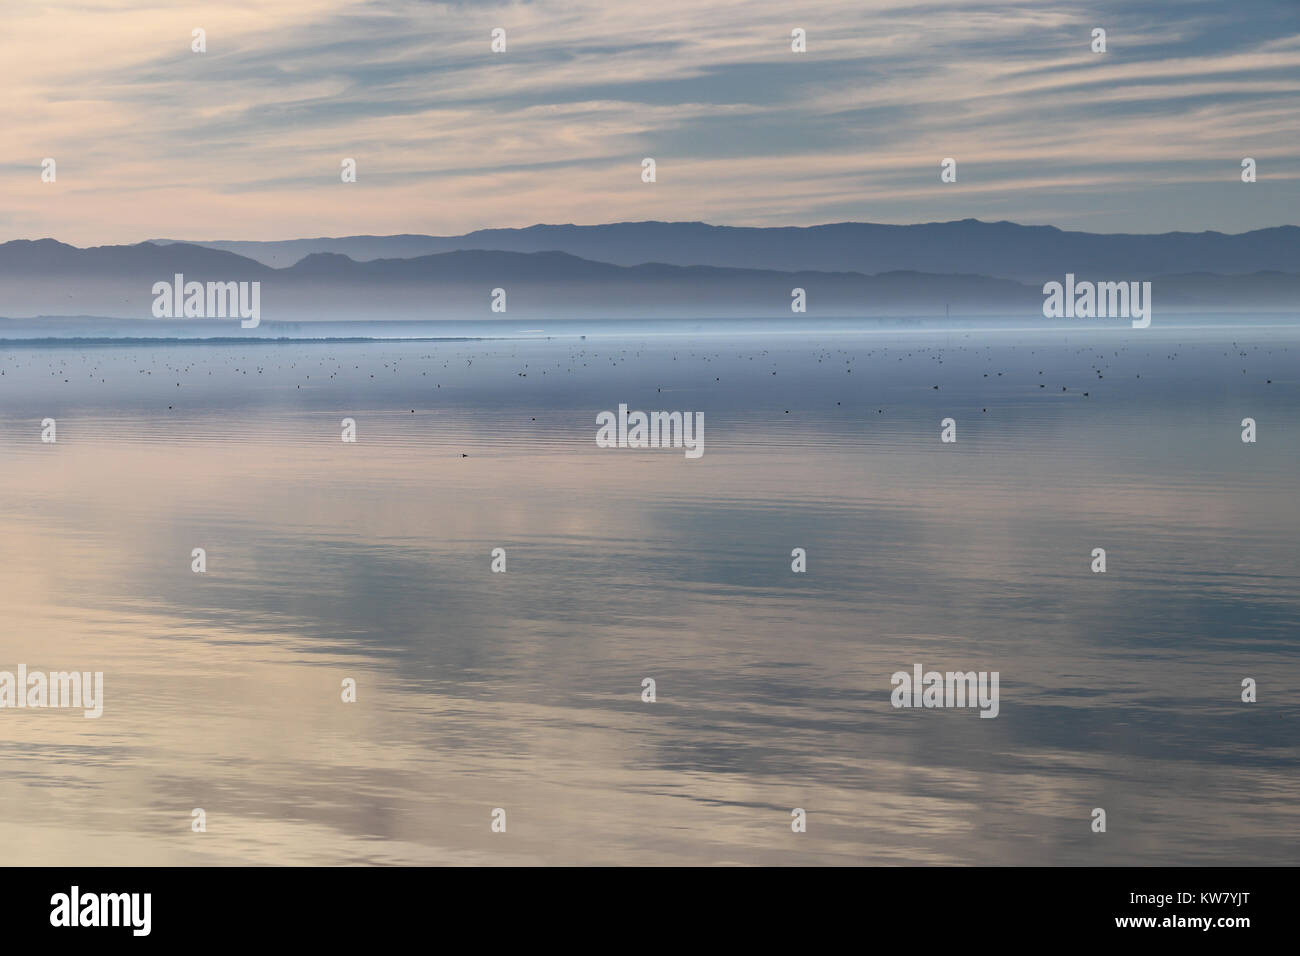 Bella Salton Sea nel tardo pomeriggio, superficie speculare che riflette il cielo, nuvole e montagne: molti uccelli in distanza. Tranquilla, pastello chiaro. Foto Stock